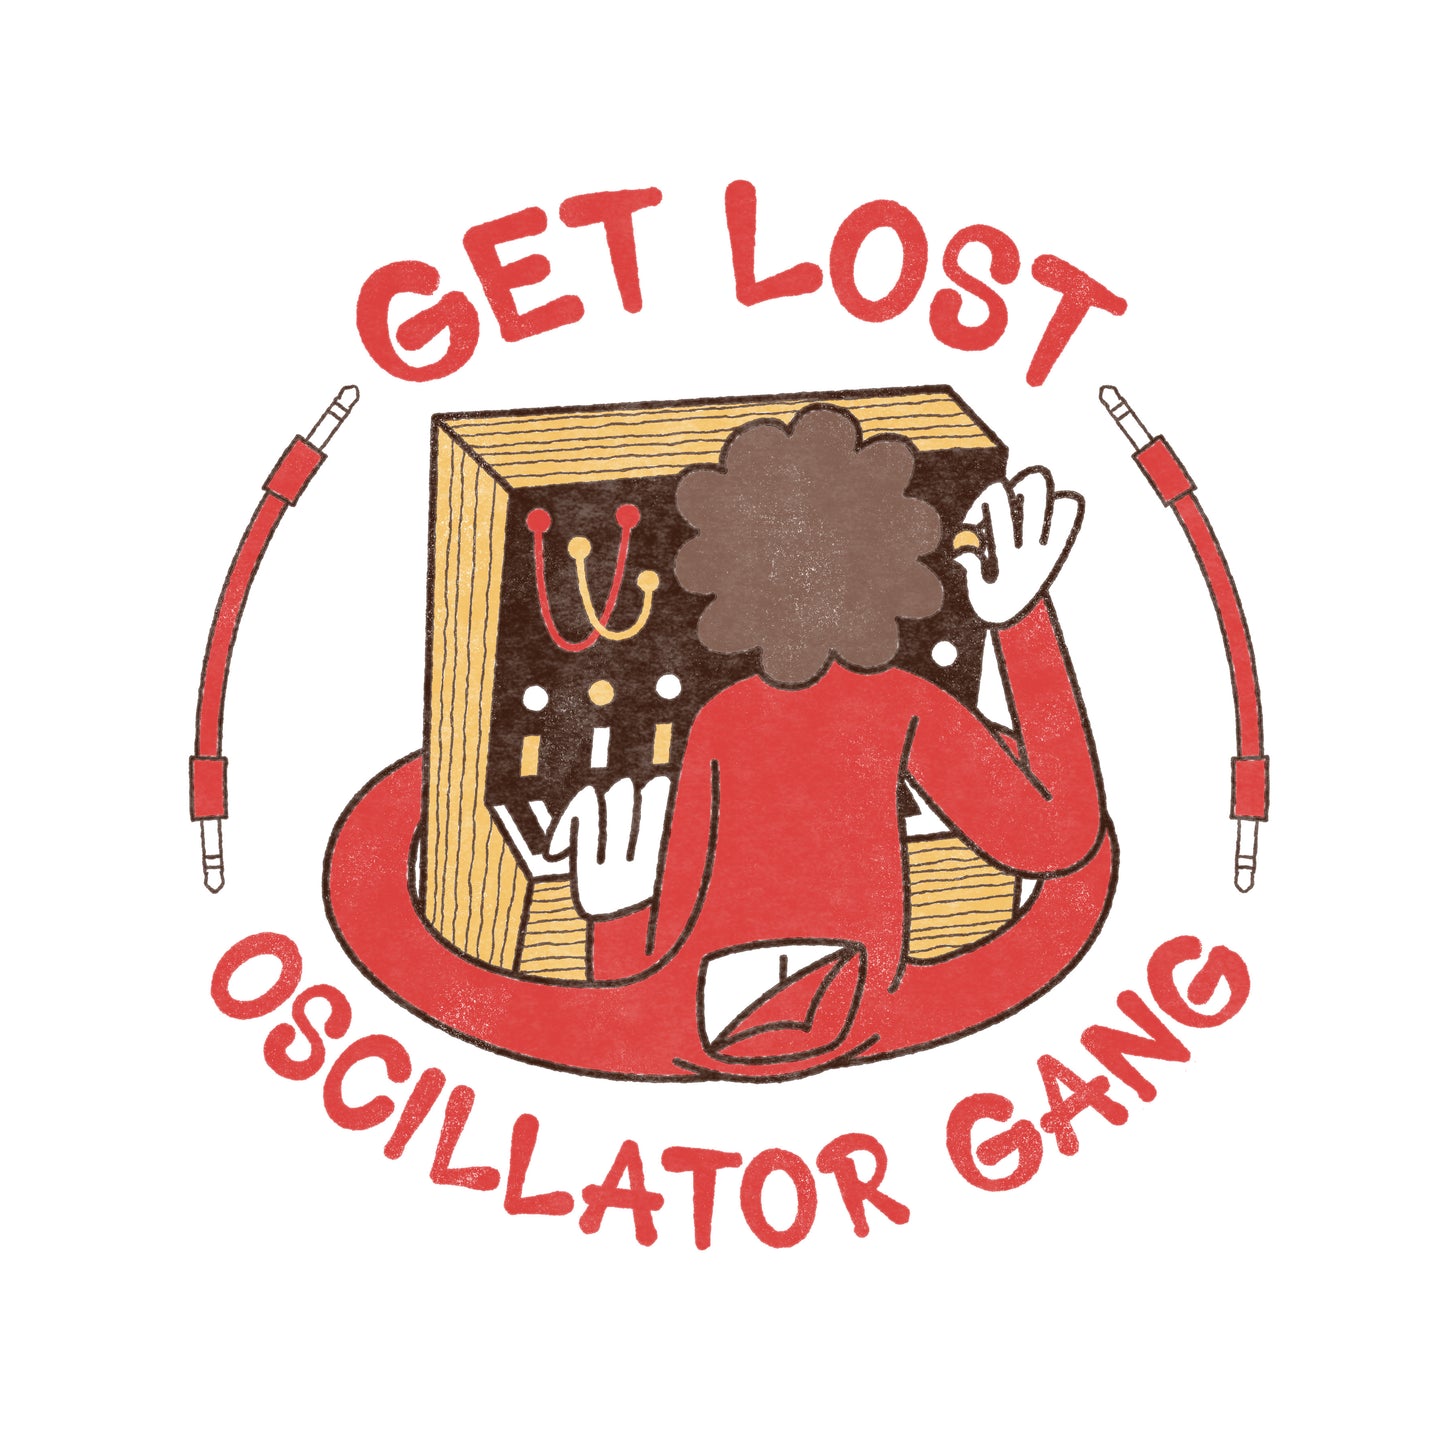 "Oscillator Gang - Get Lost" Mug